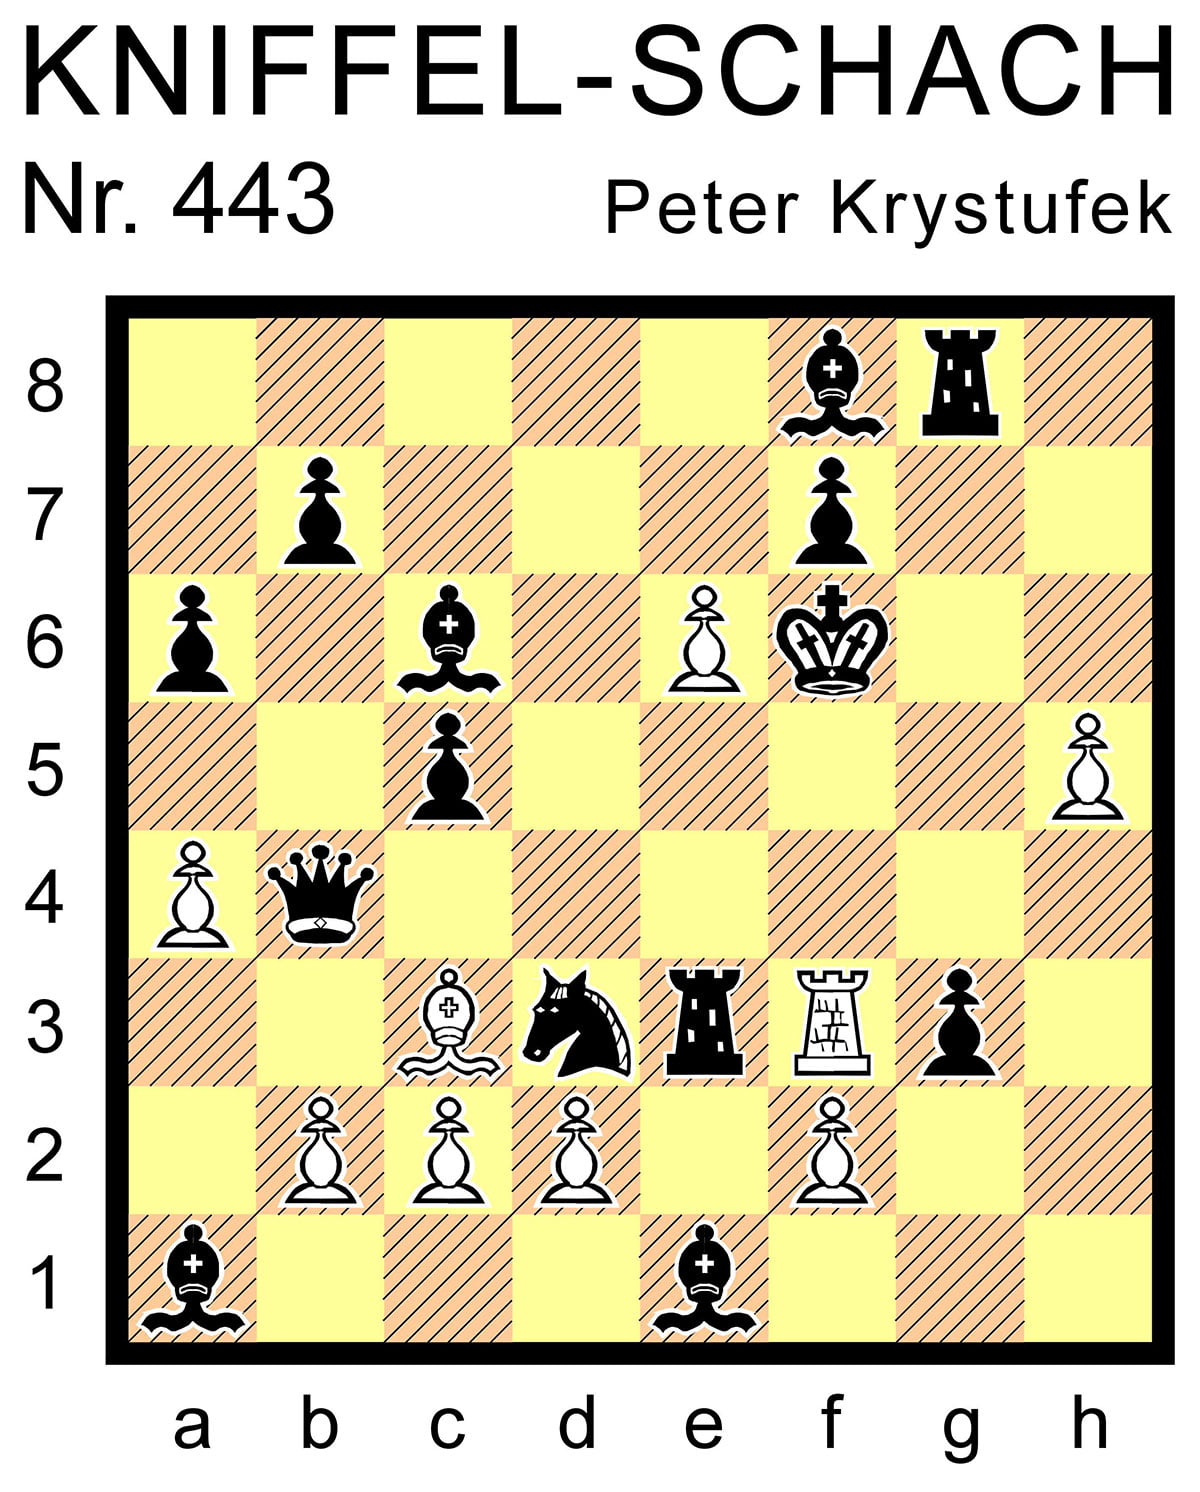 Kniffel-Schach Nr. 443